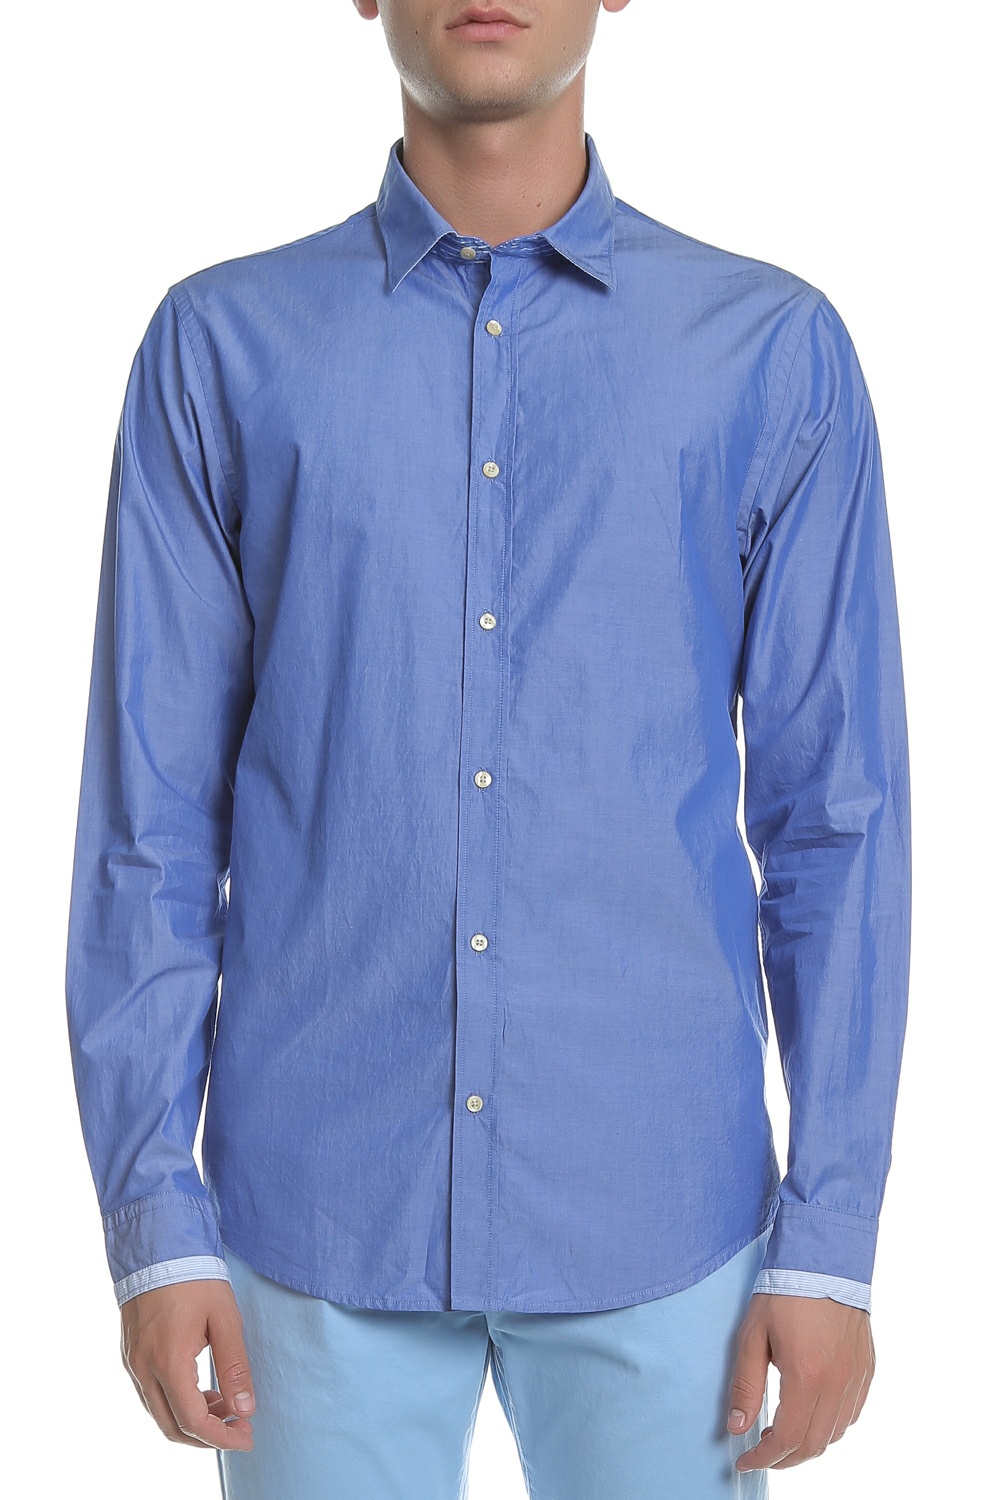 Ανδρικά/Ρούχα/Πουκάμισα/Μακρυμάνικα SCOTCH & SODA - Ανδρικό πουκάμισο Scotch & Soda μπλε